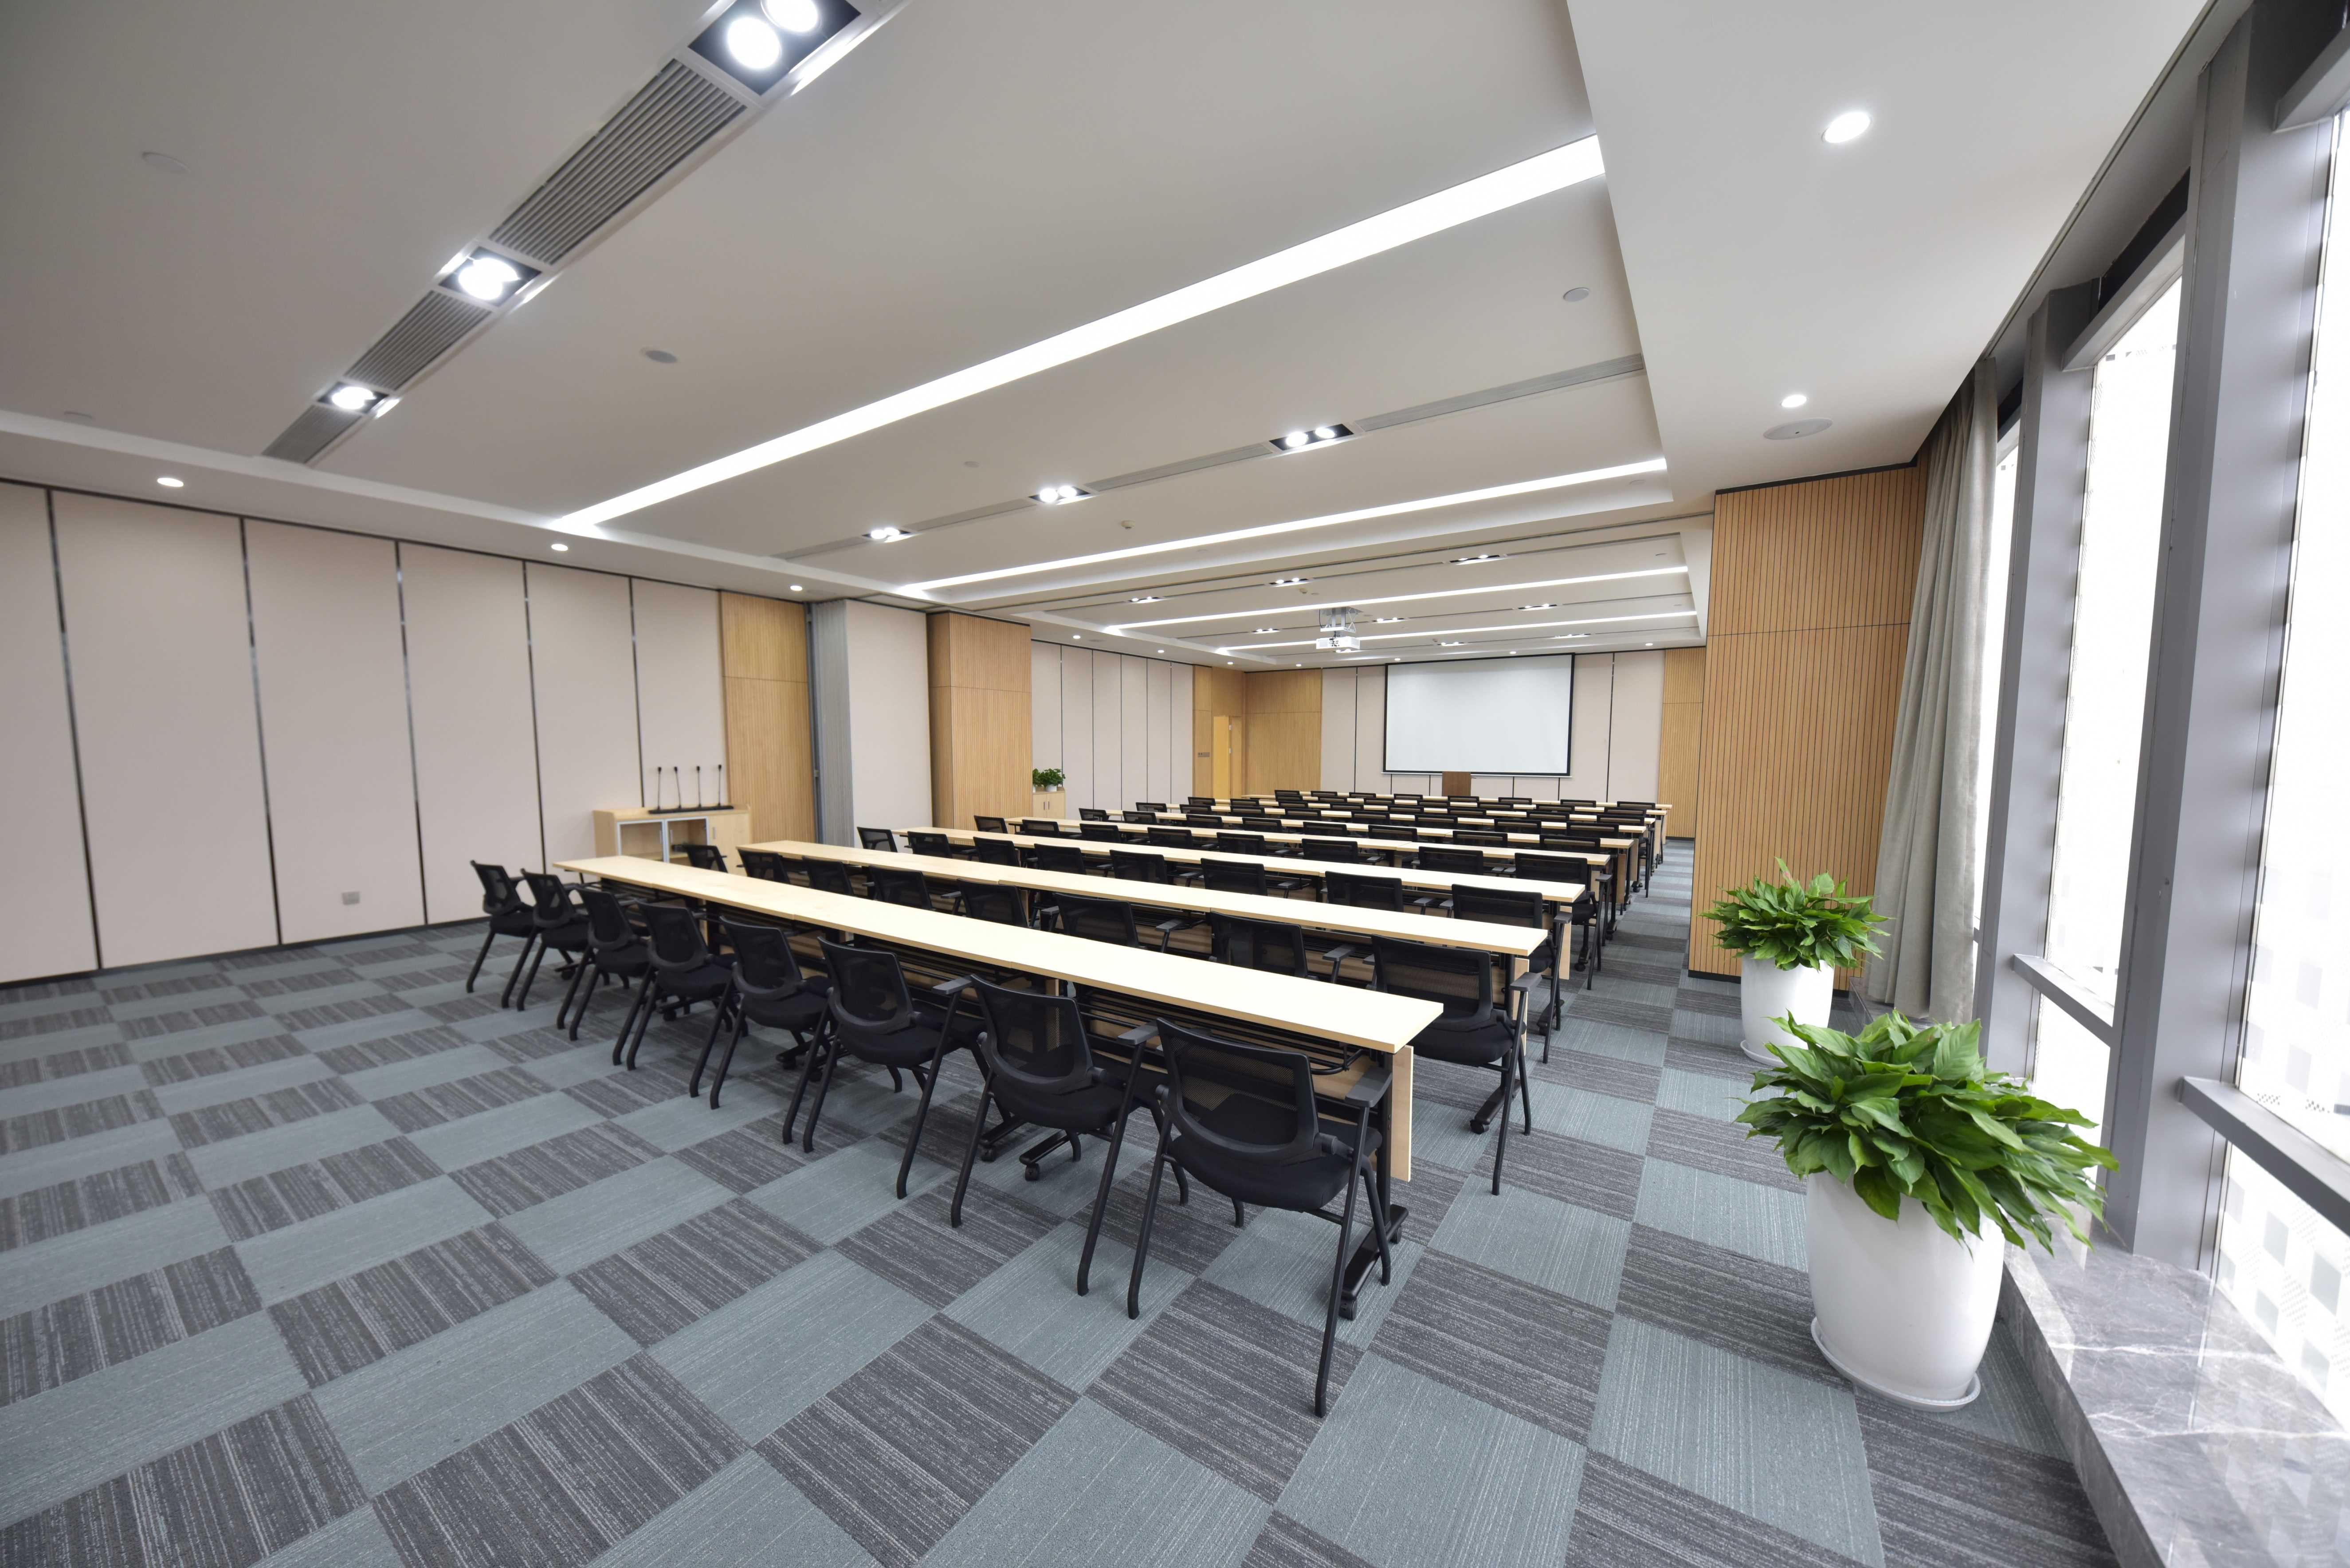 资源服务产业园园区共有会议室11间,其中:大型会议室(可容纳256人)1间